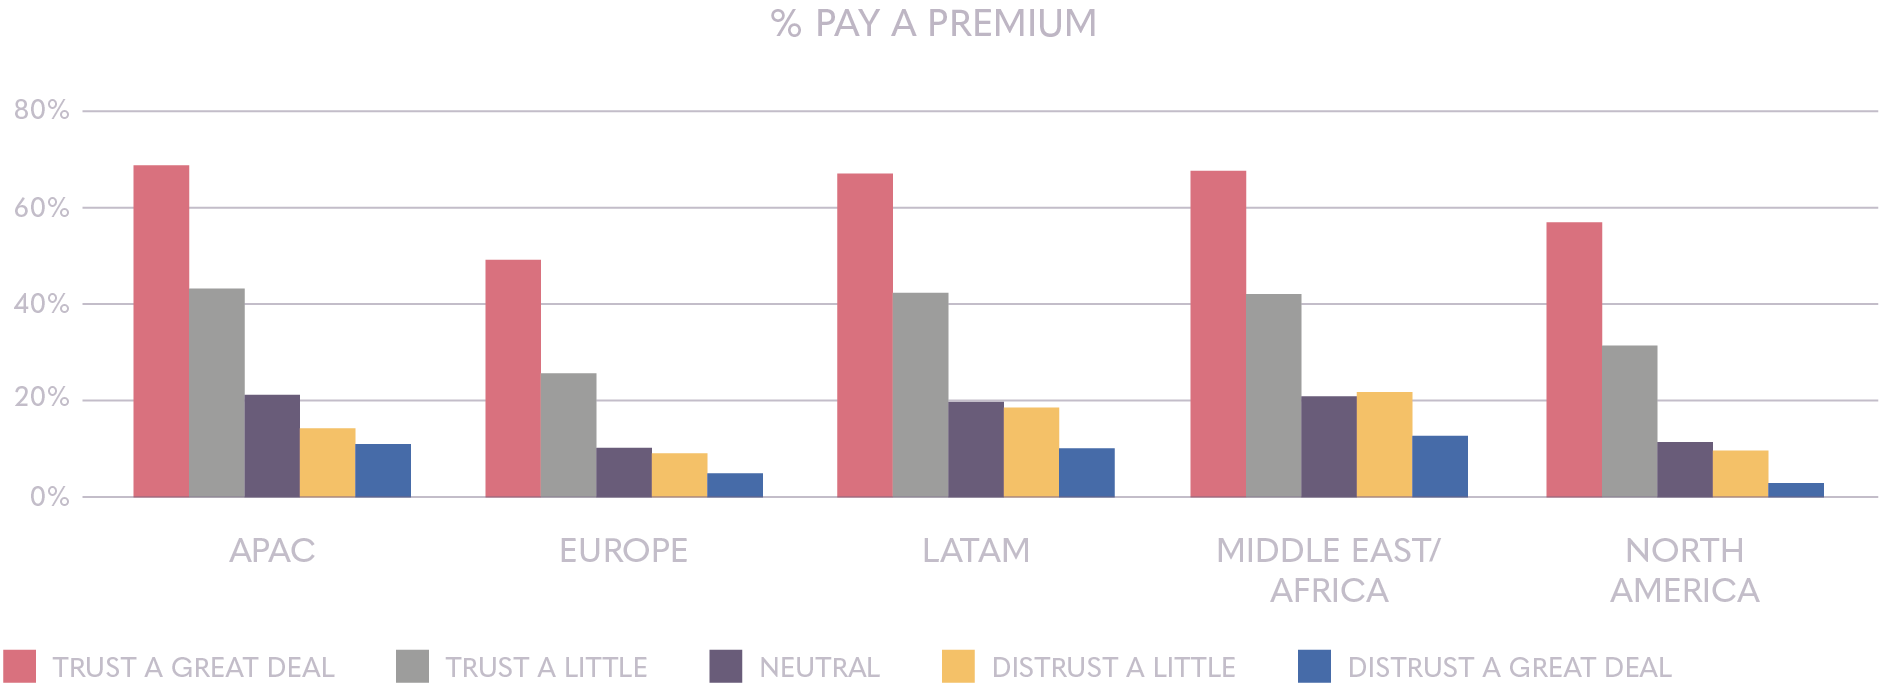 Pay a premium | Ipsos